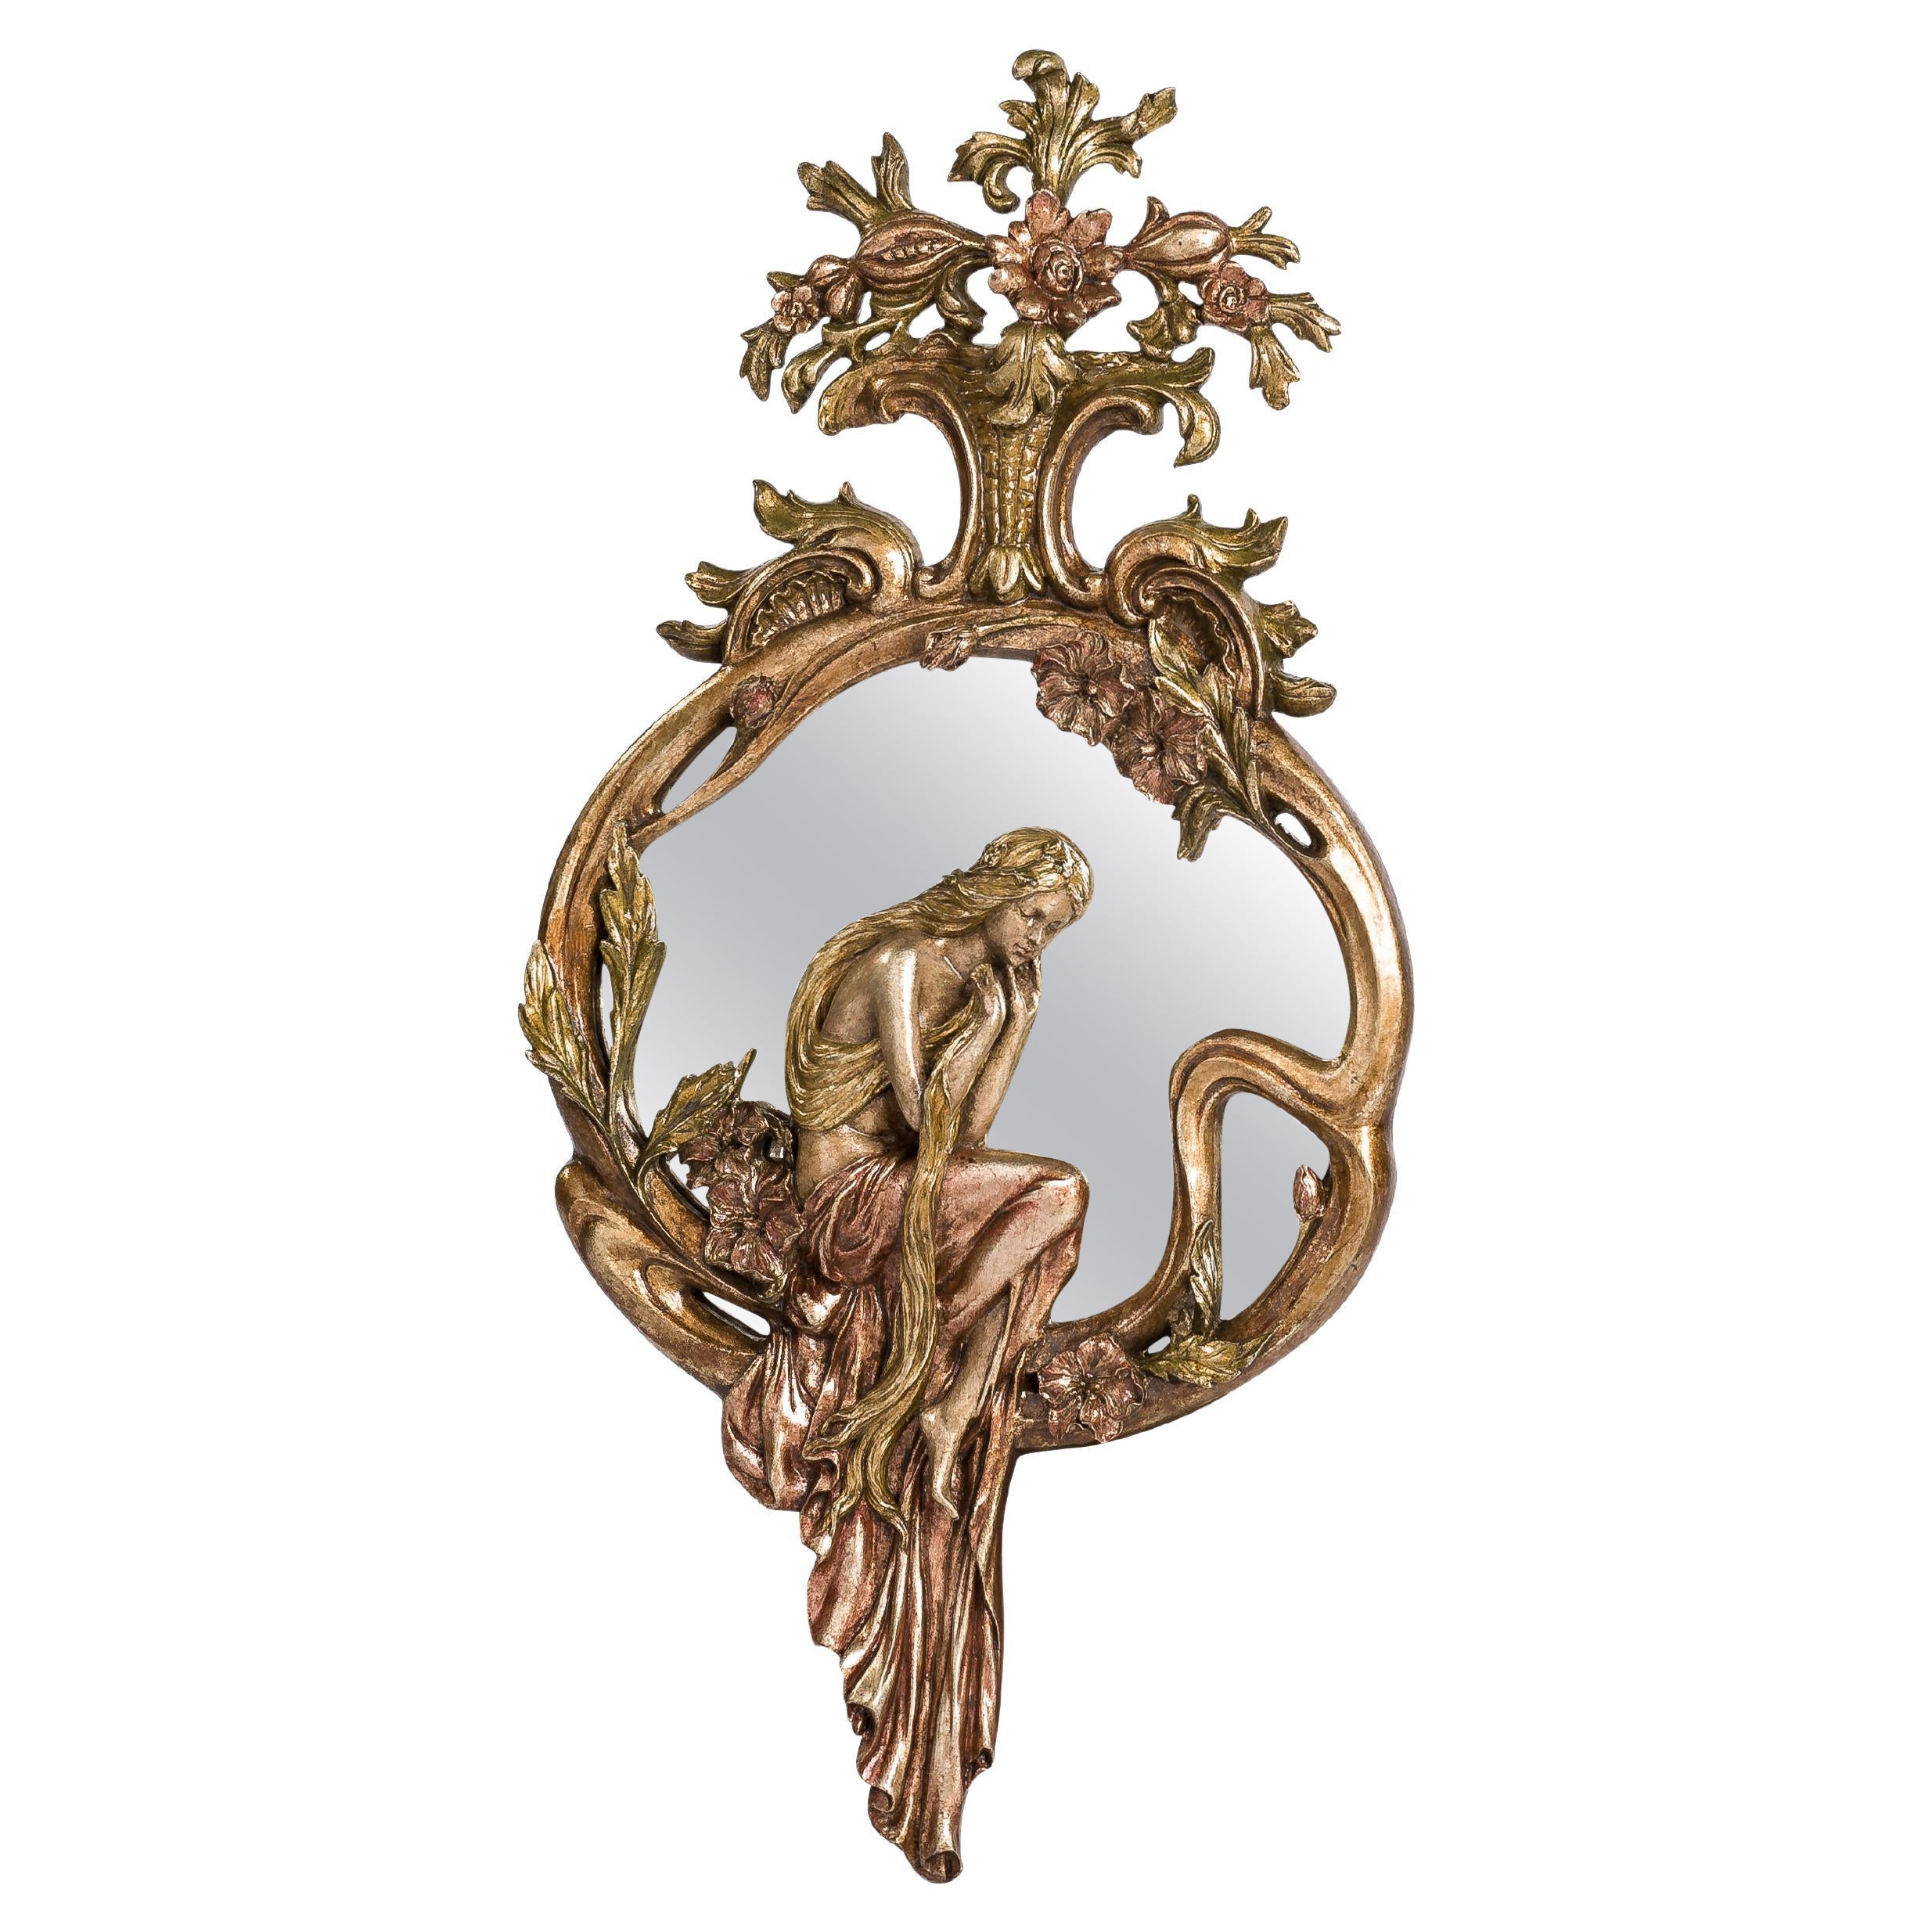 Antique French Art Nouveau or Jugendstil Silver Leaf Gilt and Patinated Mirror